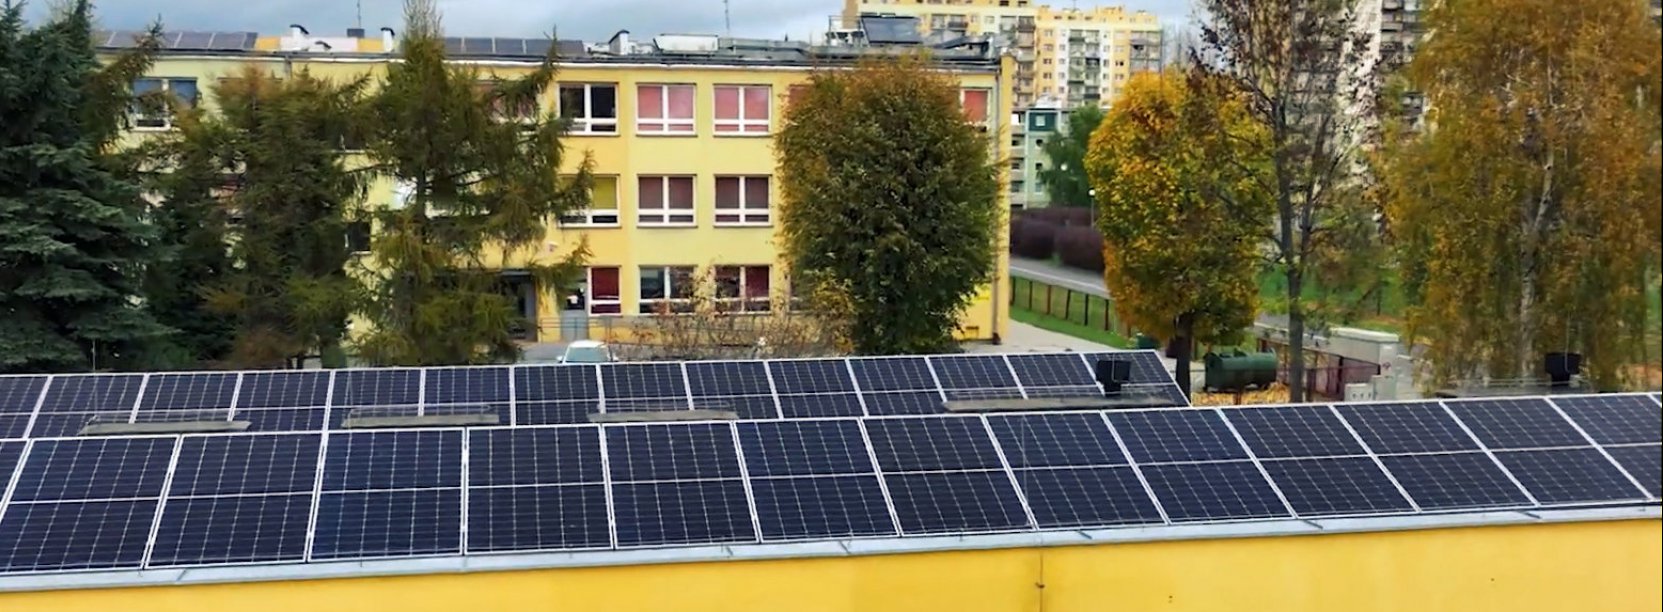 Panele fotowoltaiczne na dachu budynku, w tle osiedle mieszkaniowe